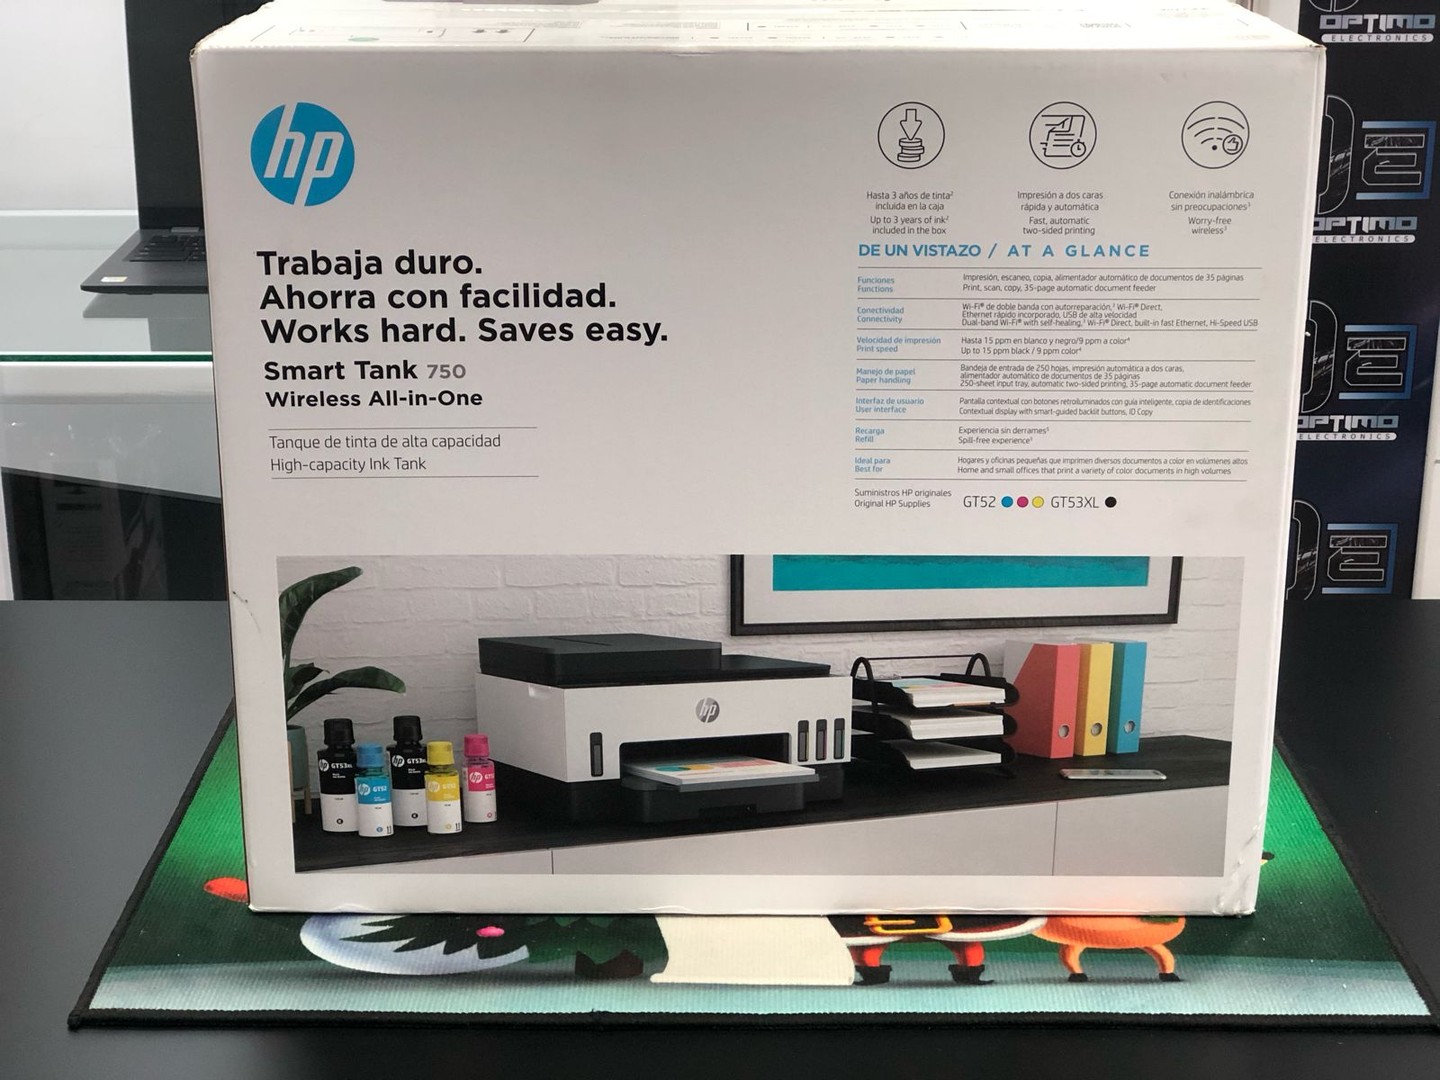 impresoras y scanners - Impresora HP 750 ADF Para Copia de Hoja Legal Nueva y Selalda Wifi, Multifuncion 1